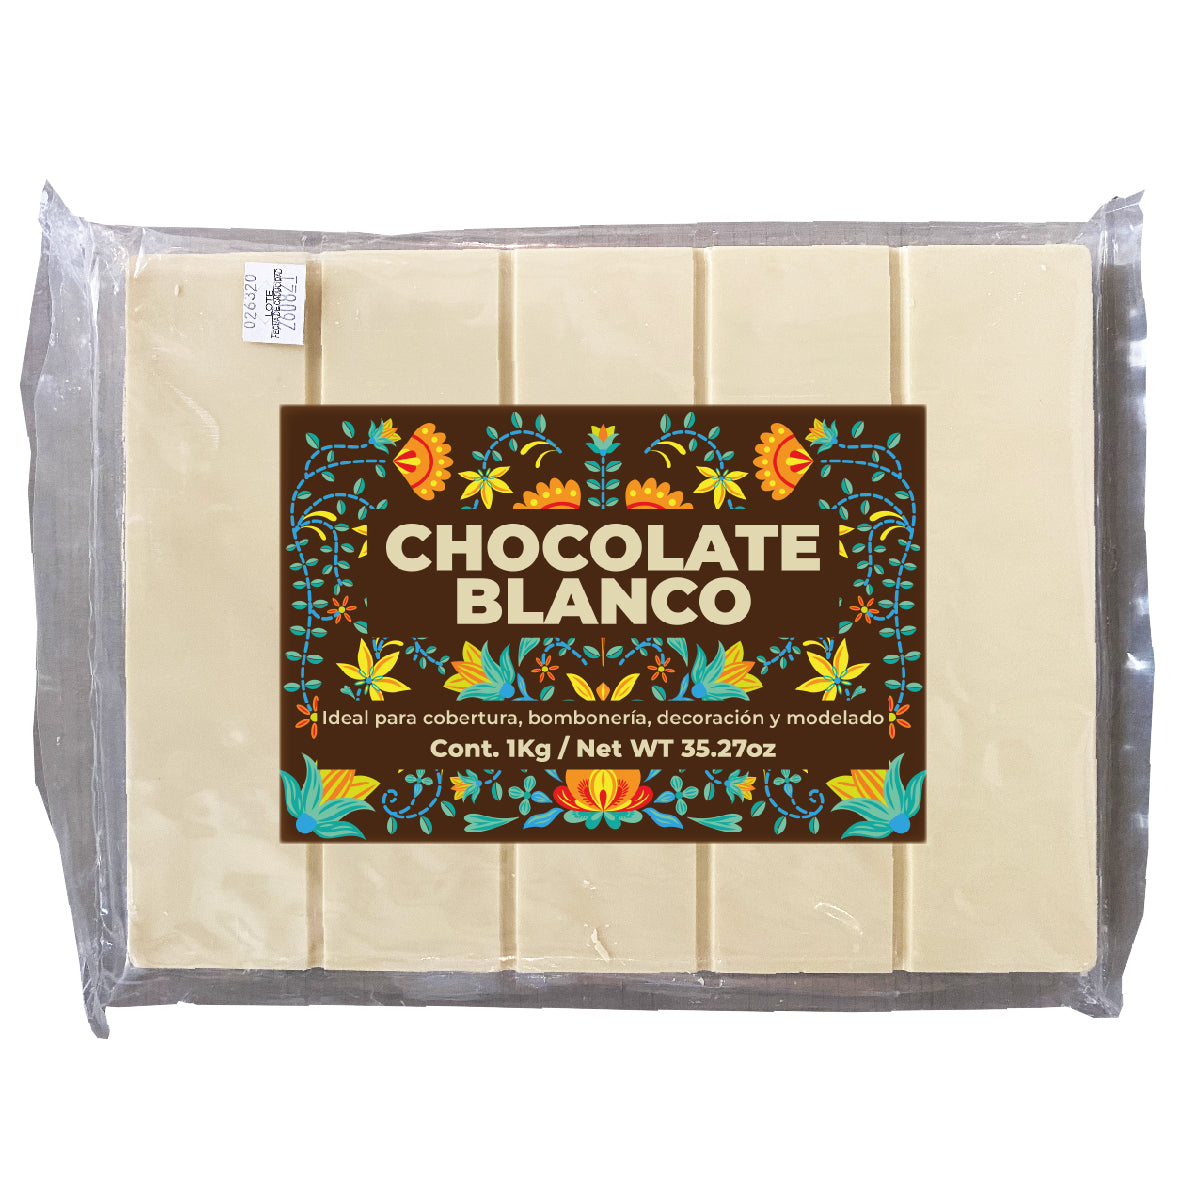 Tablilla Chocolate Blanco 1kg - Lé Fortune Store